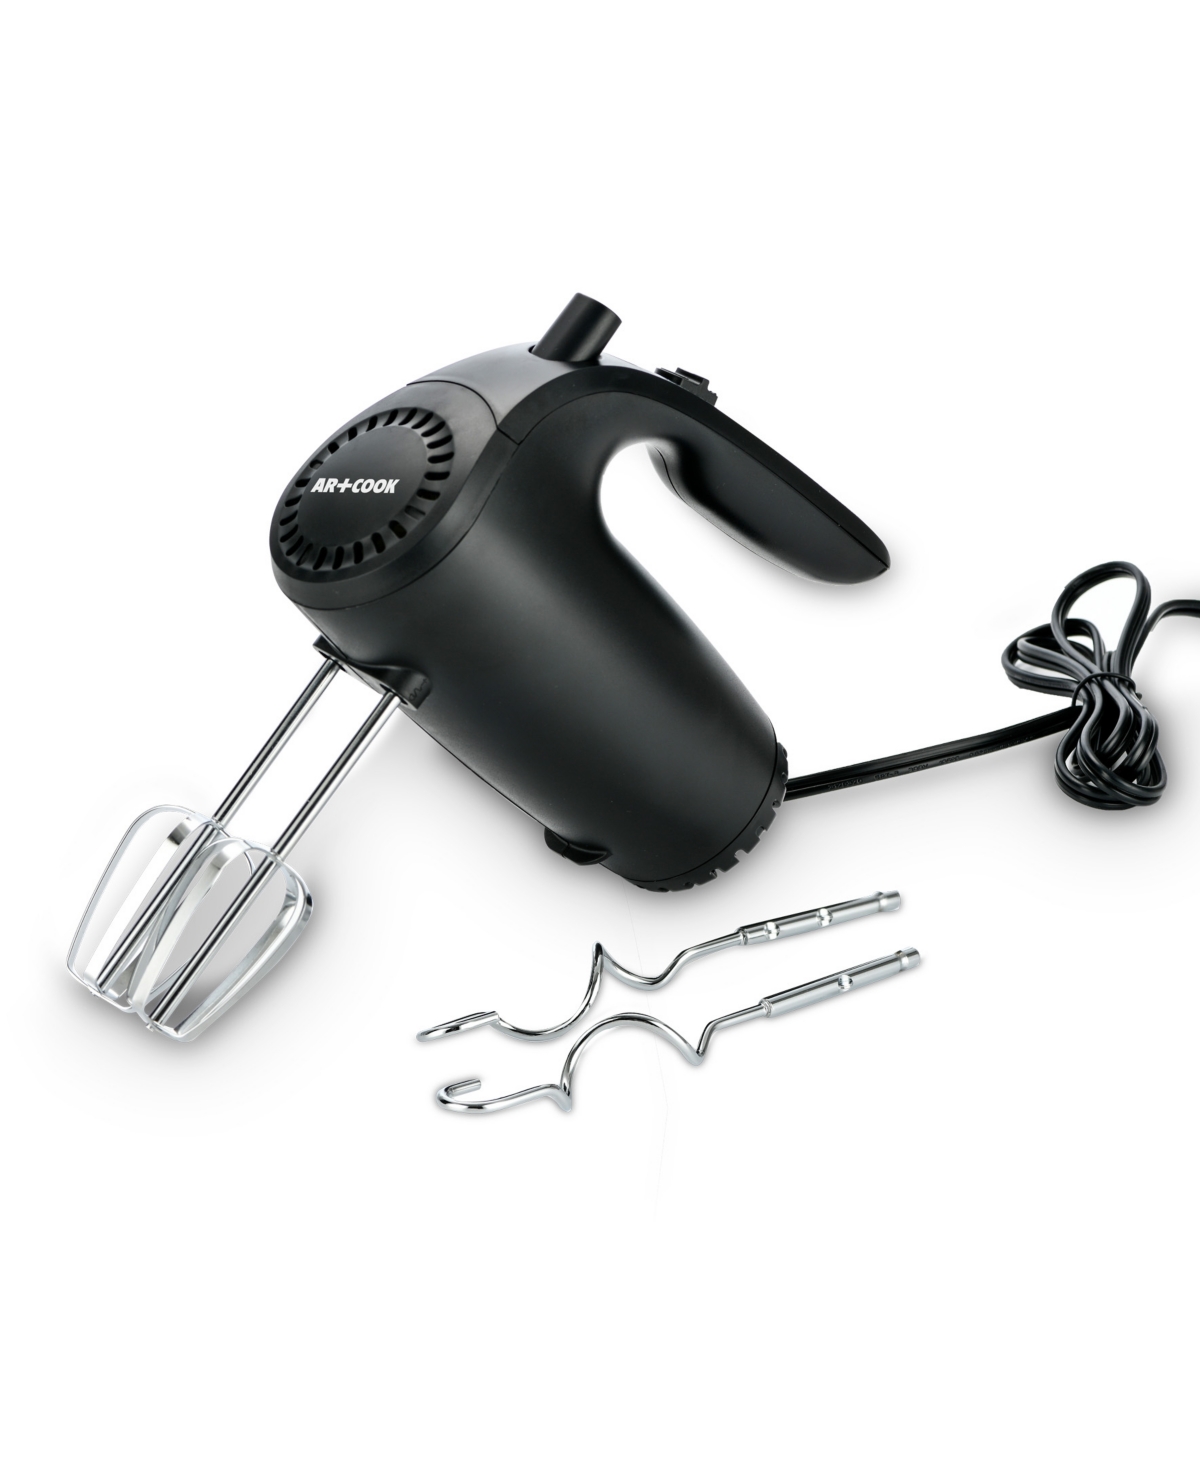 Art & Cook 5-speed Hand Mixer In Black